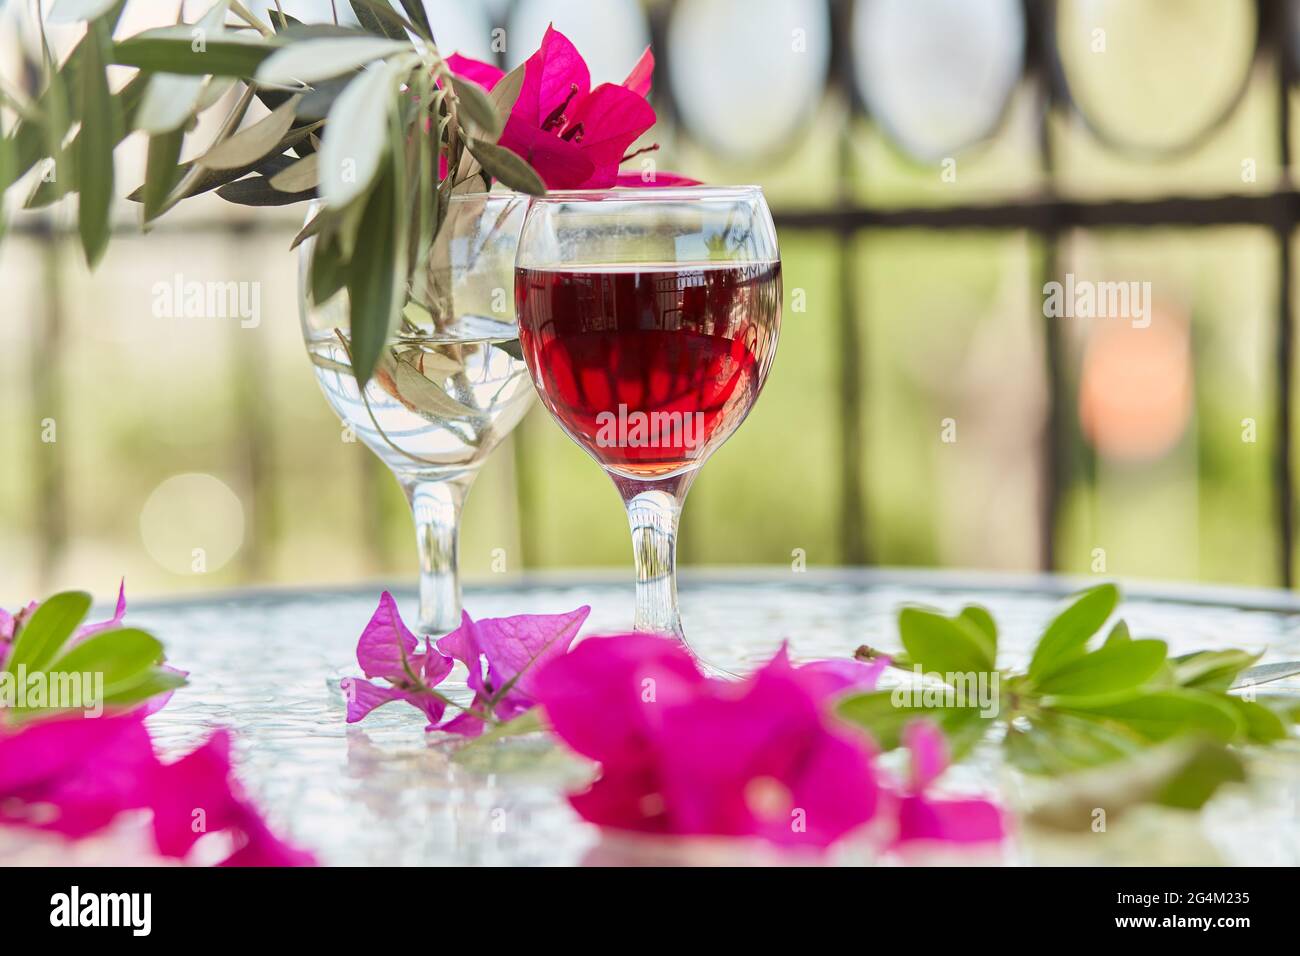 Rosa tropische Blumen und ein Glas Rotwein. Schöner, farbenfroher Sommerhintergrund. Dekorative rosa Blüten von Bougainvillea in einem Glas. Romantisches Abendessen Stockfoto